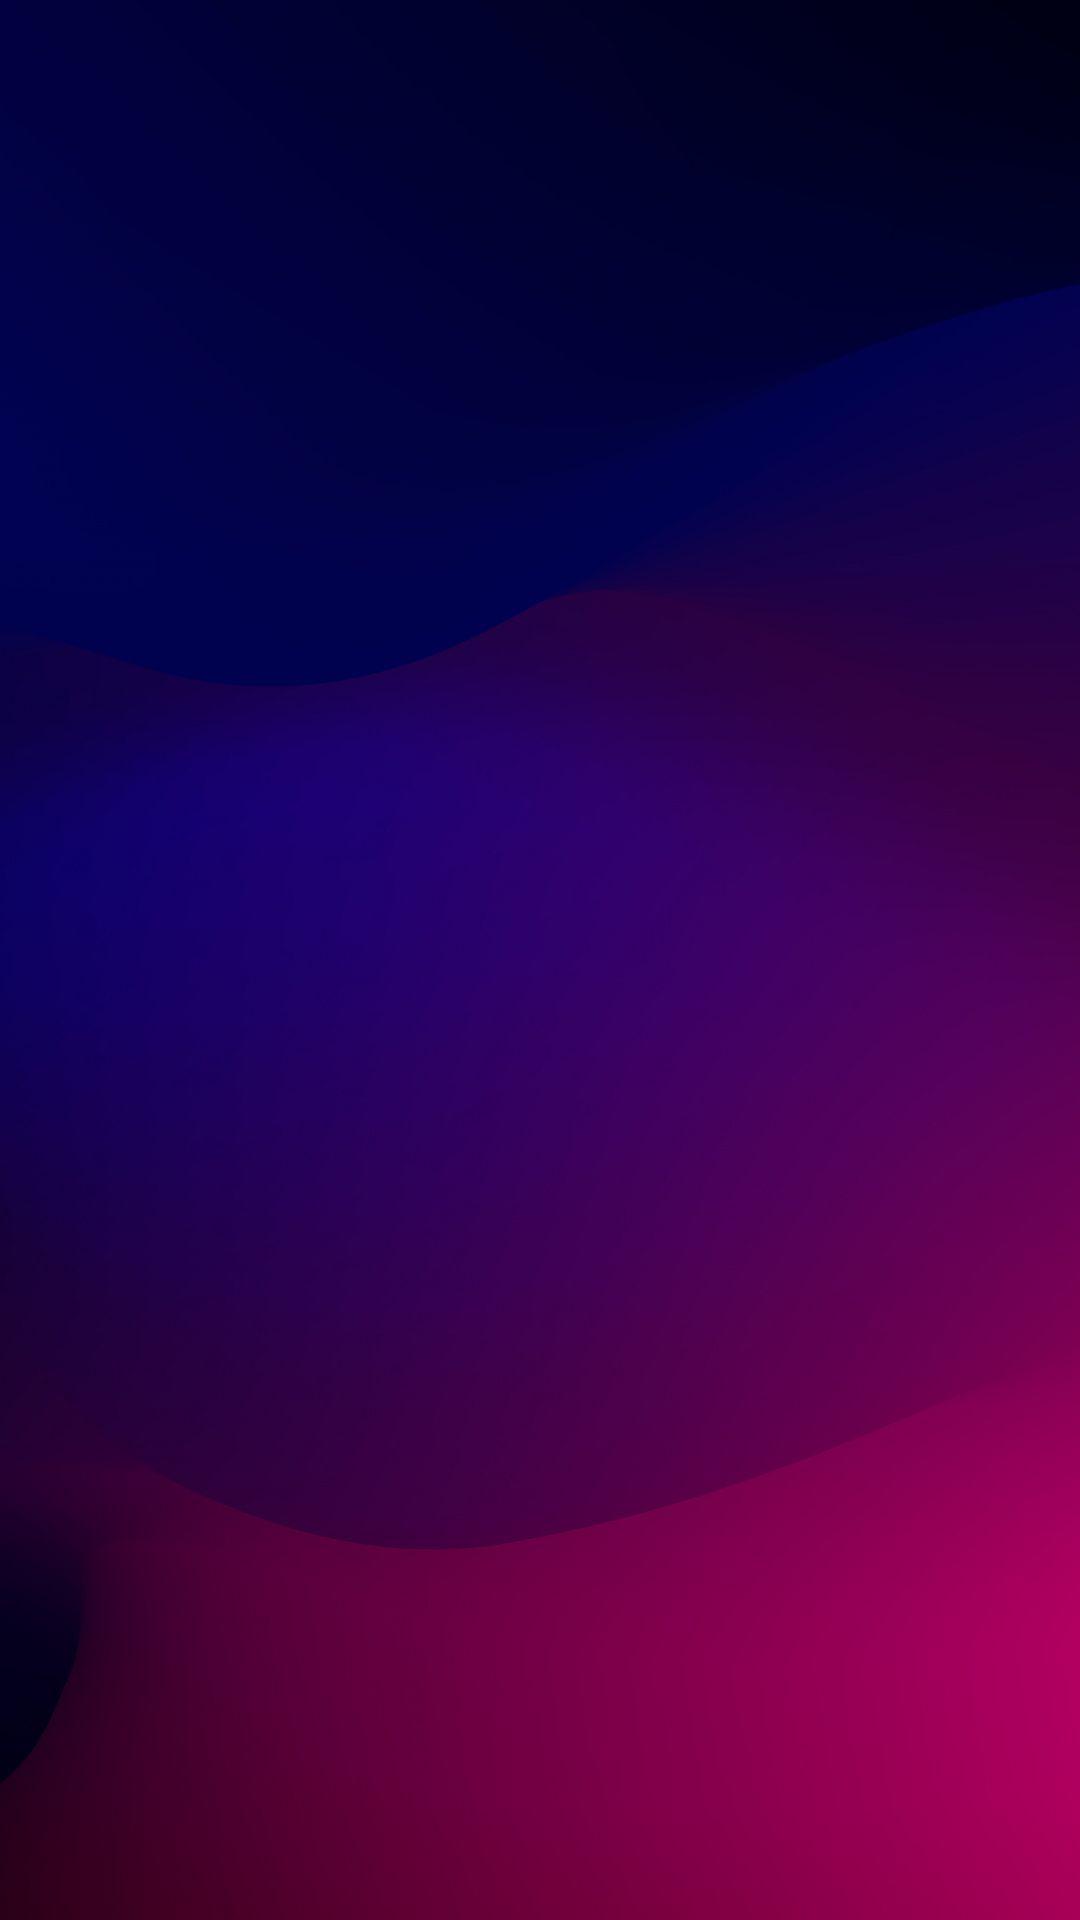 Dark, abstract, simple colors, blur, 1080x1920 wallpaper. iPhone háttérképek, Hátterek, iPhone